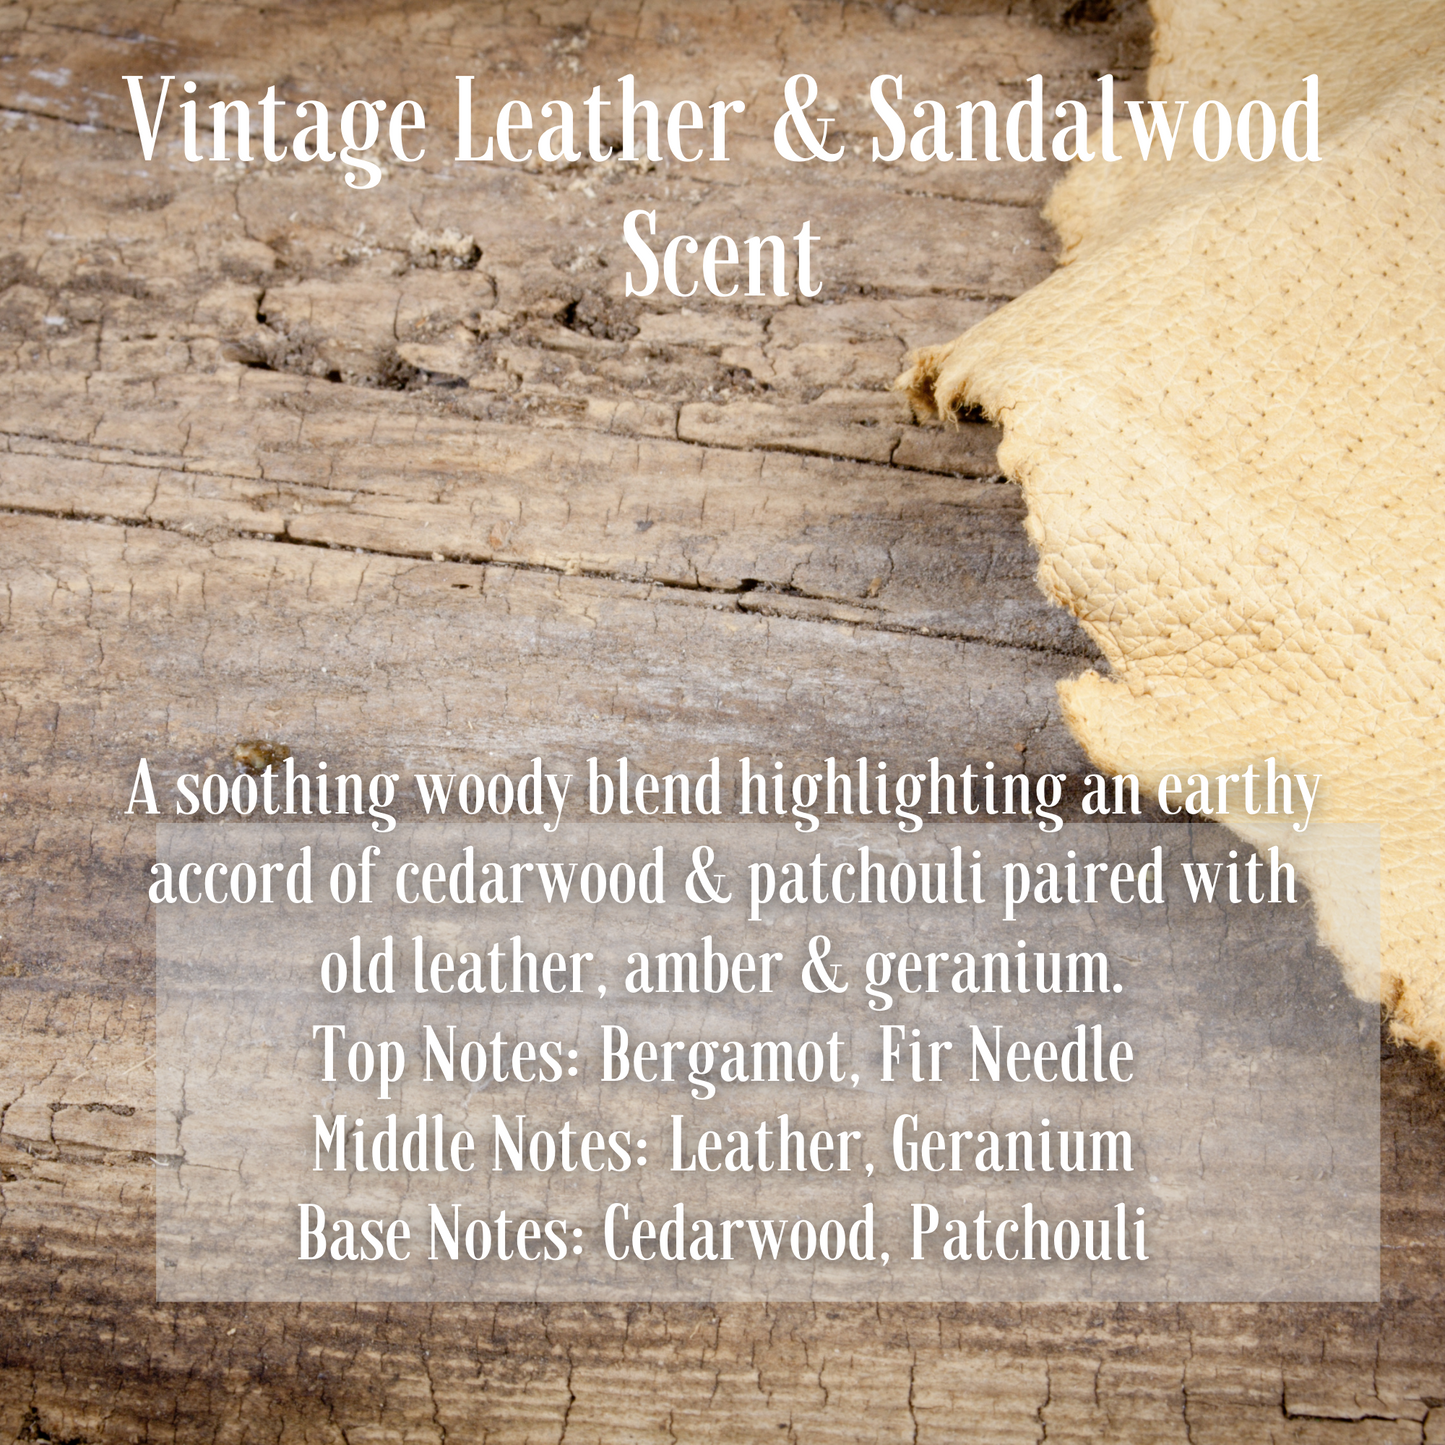 Vintage Leather & Sandalwood Fragrance Man Candle in Large Black Tumbler 285g/10oz